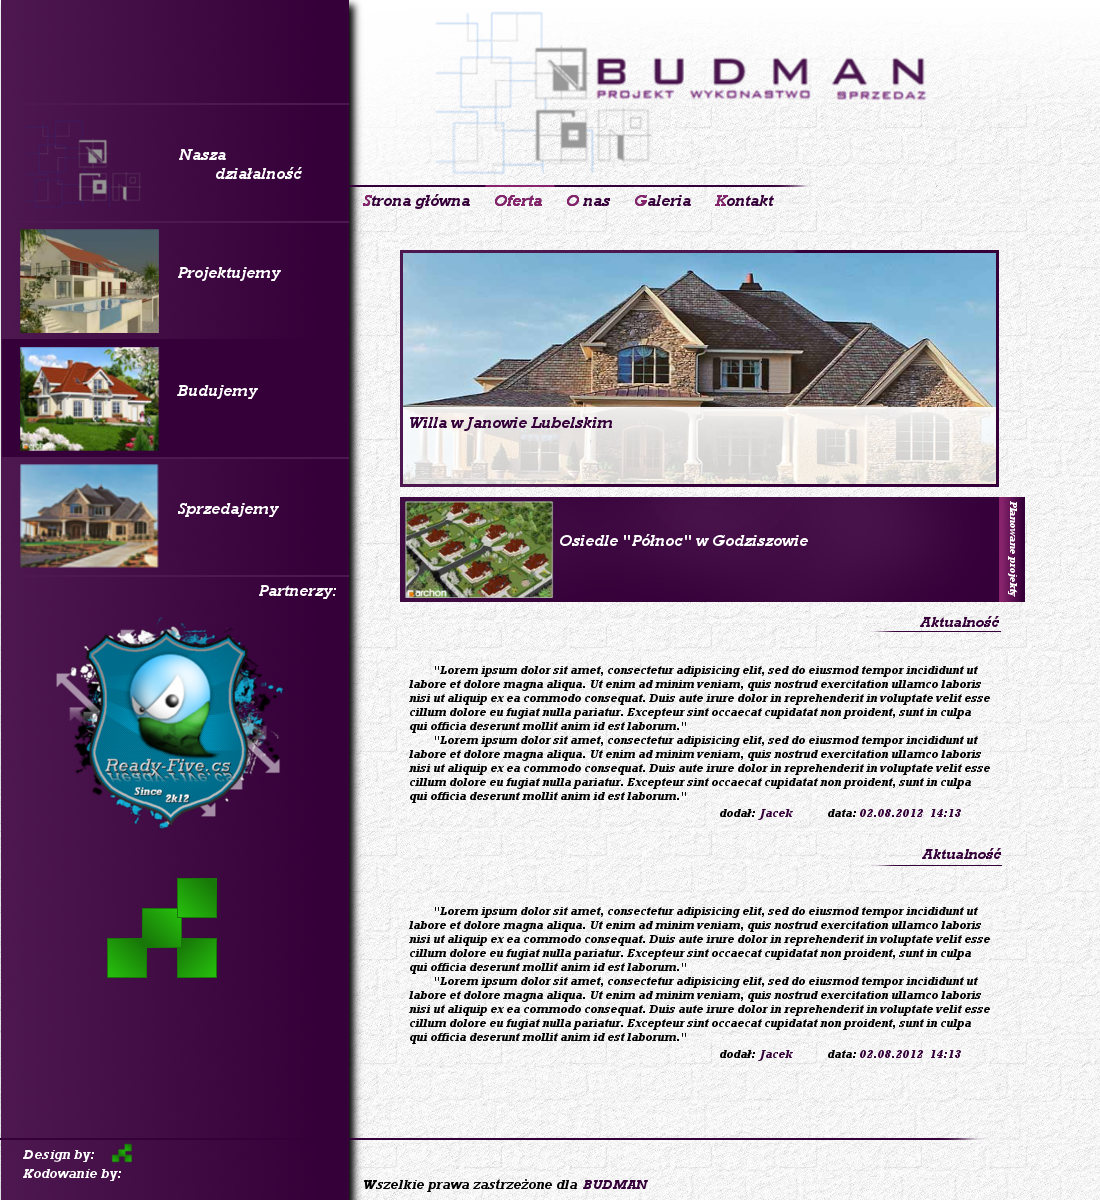 BUDMAN